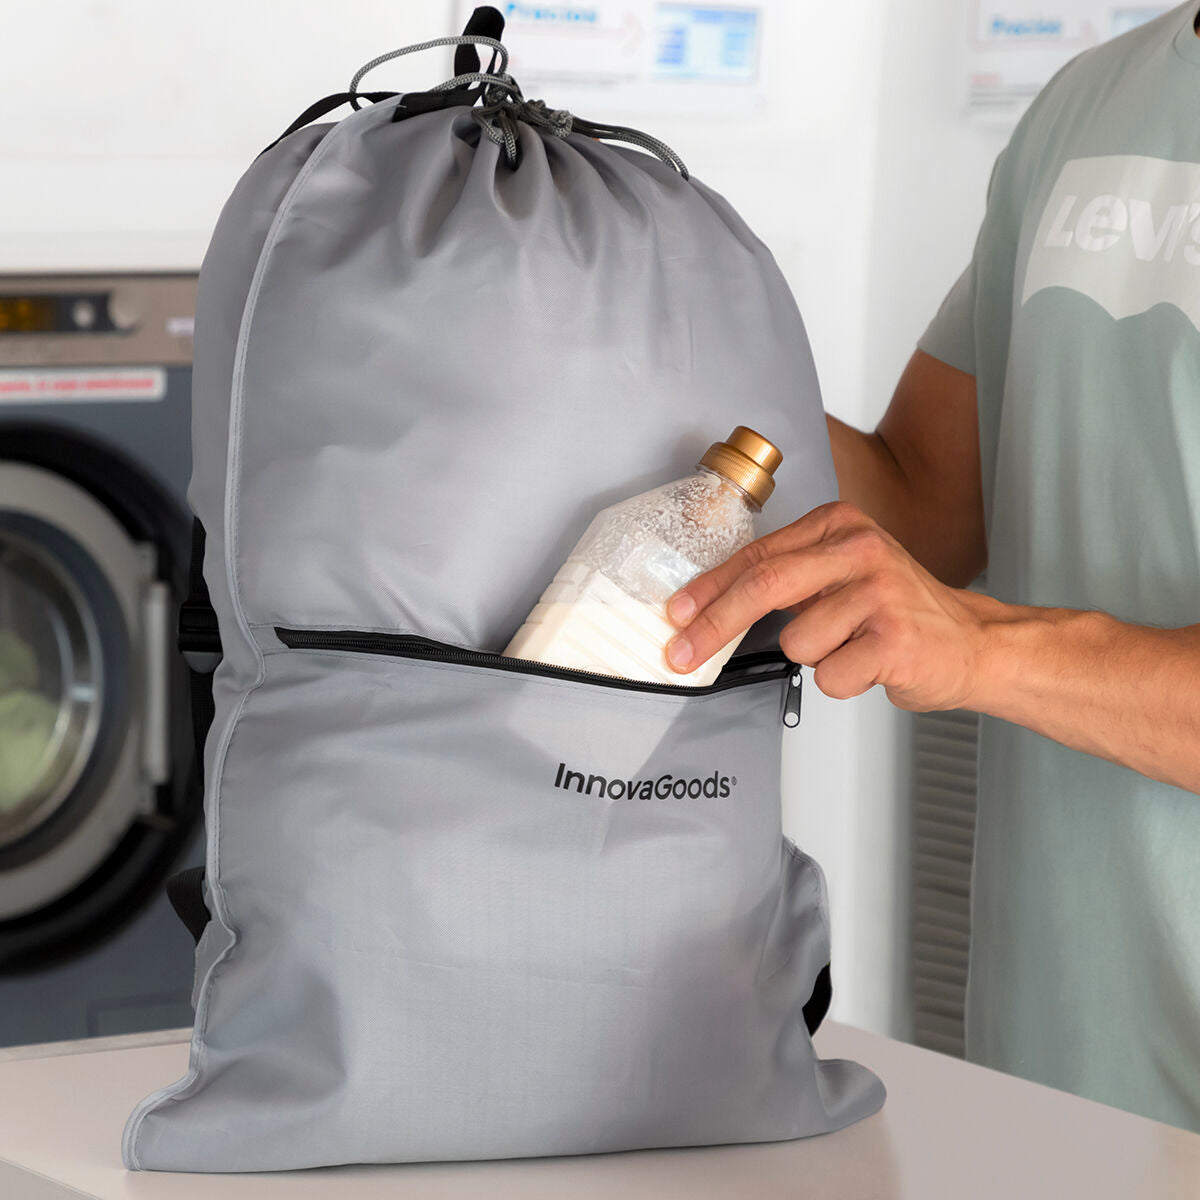 Kaufe Wäsche-Rucksacktasche für die Wäscherei Clepac InnovaGoods bei AWK Flagship um € 28.00